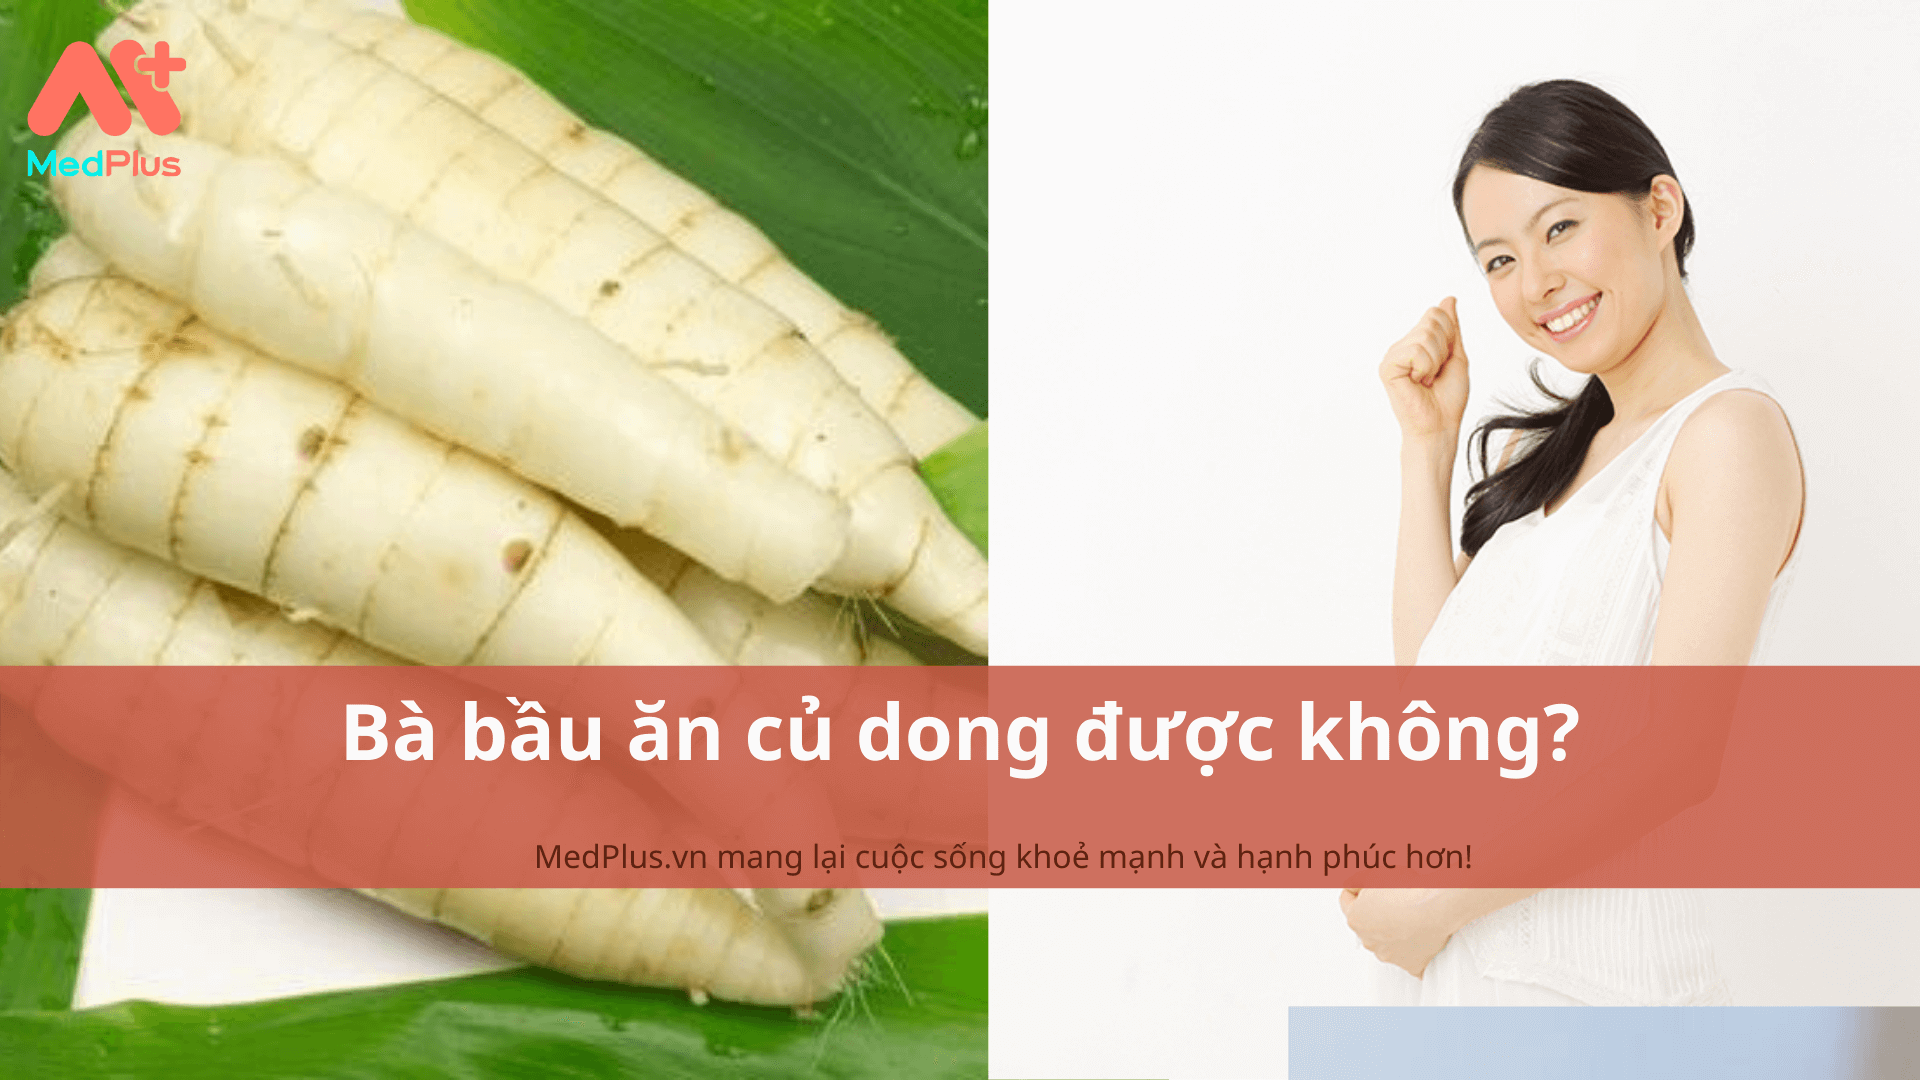 ba bau an cu dong duoc khong 1 1 1 - Medplus